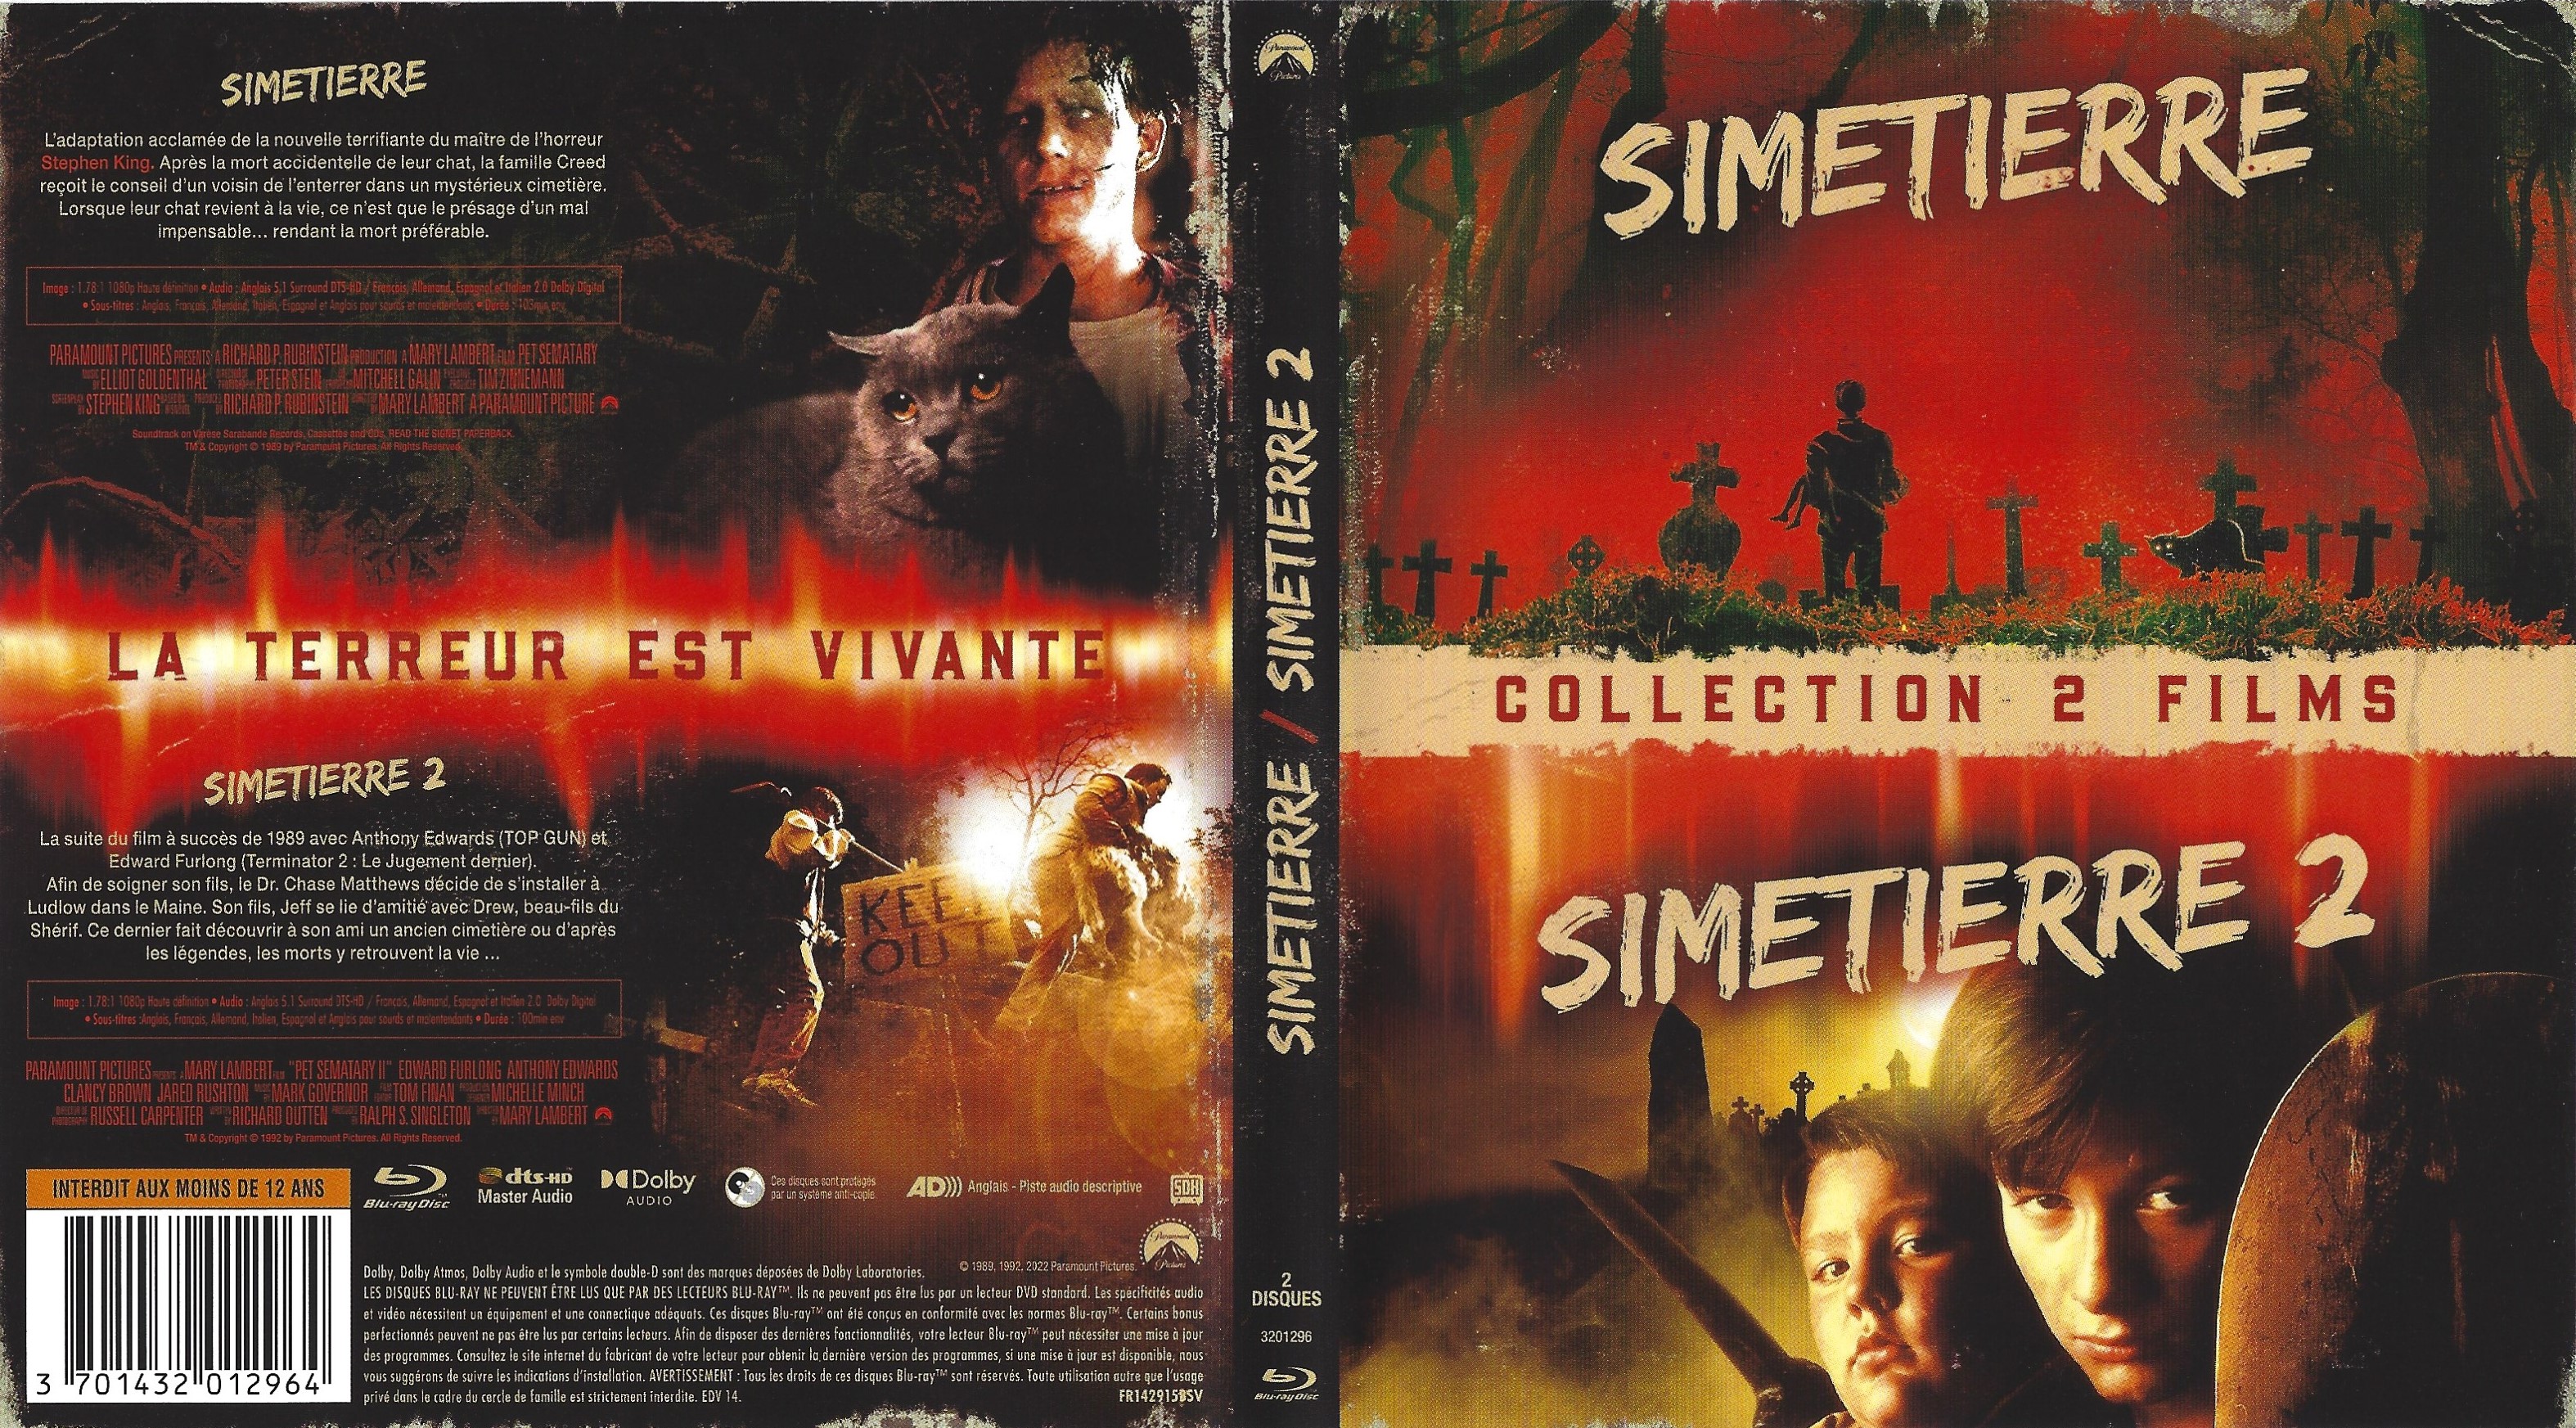 Jaquette DVD Simetierre et Simetierre 2 (BLU-RAY)